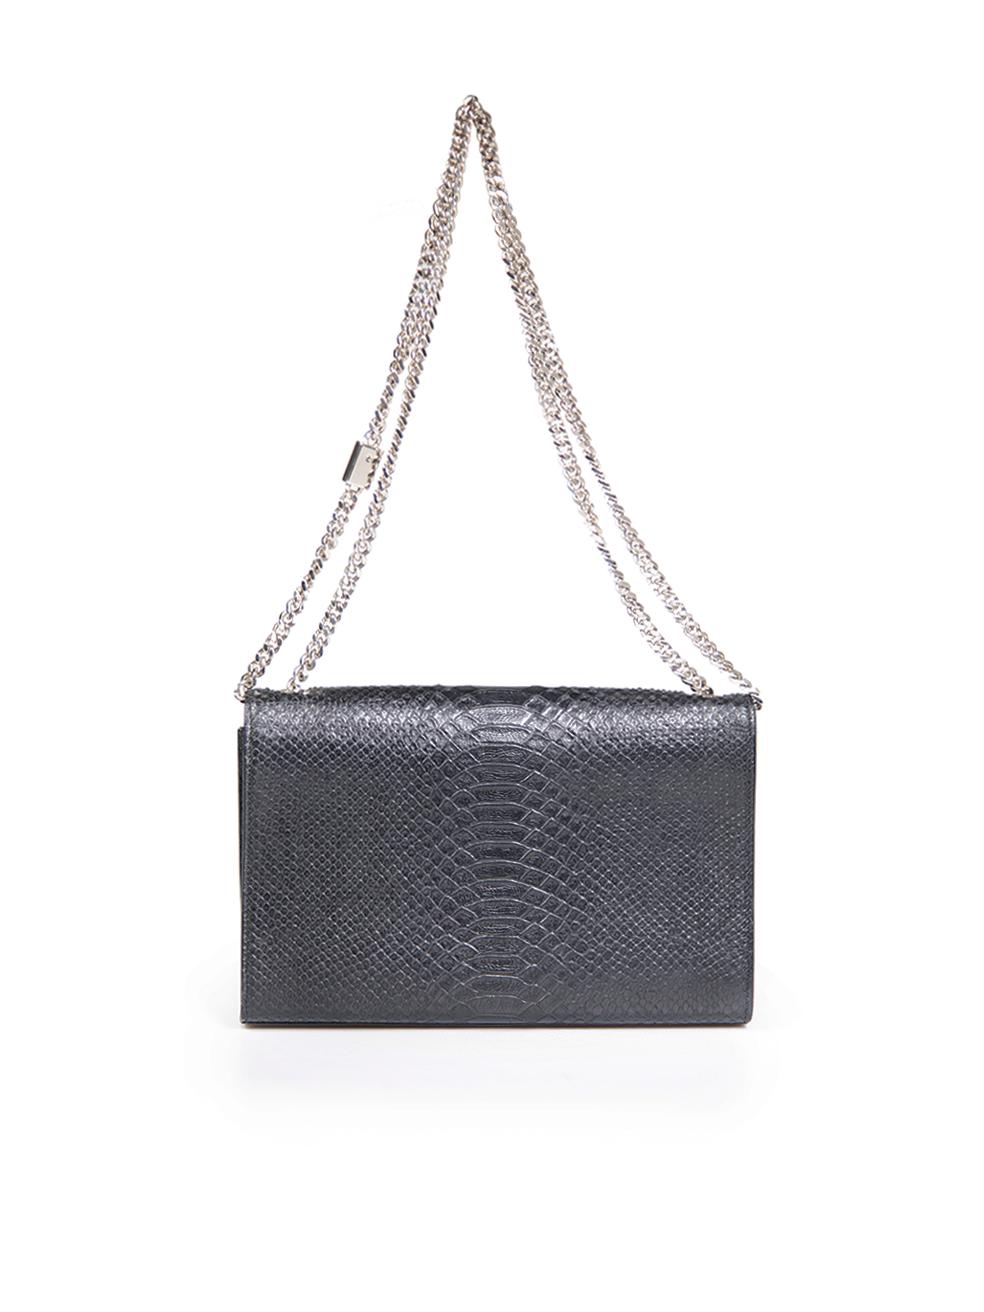 Saint Laurent Black Python Small Kate Tassel Shoulder Bag 1